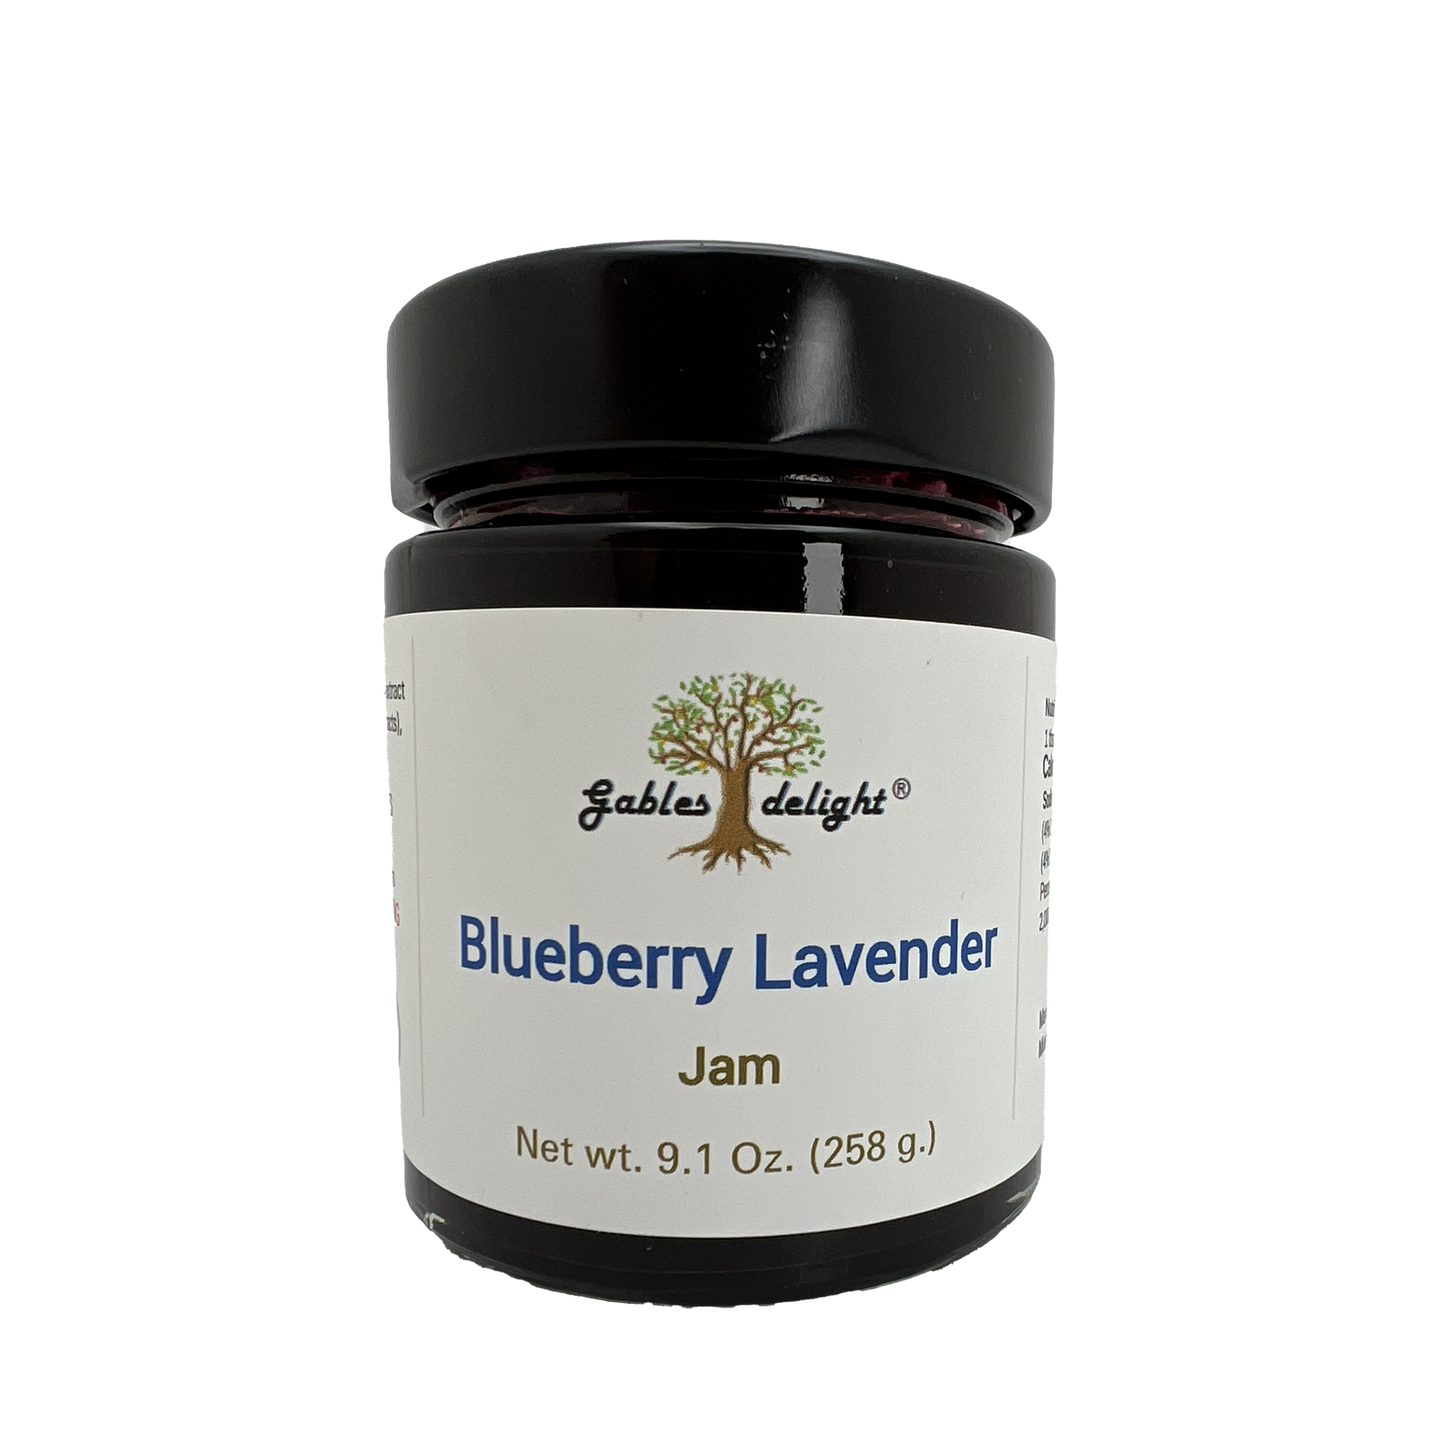 Gables Delight Blueberry Lavender Jam